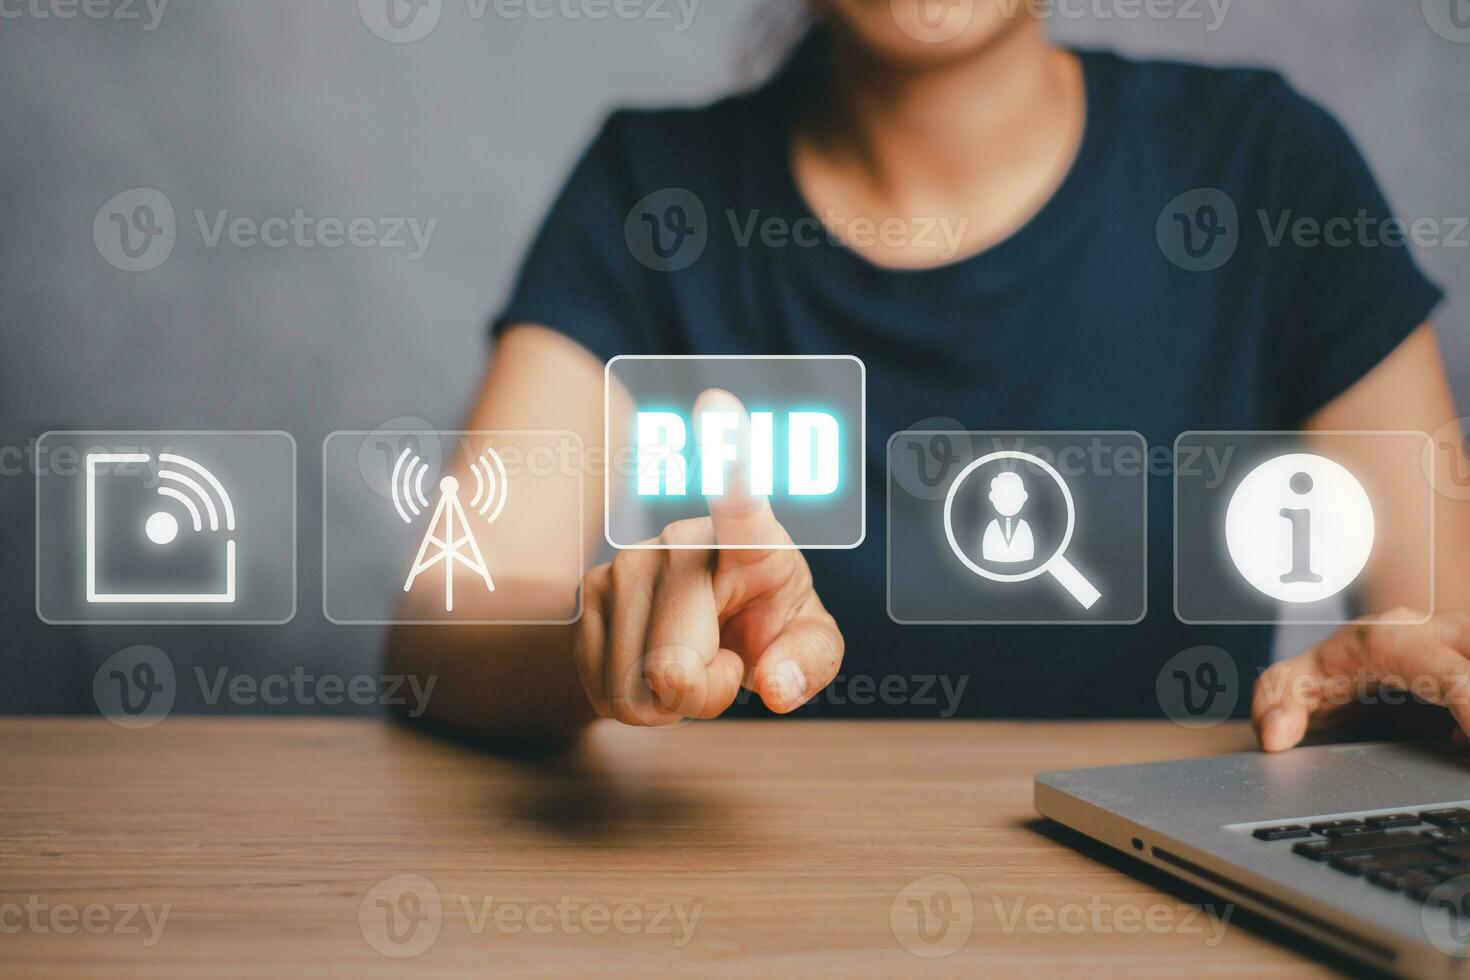 rfid, funkfrequenzidentifikationskonzept, person, die einen laptop verwendet und das rfid-symbol auf dem virtuellen bildschirm mit der hand berührt. foto